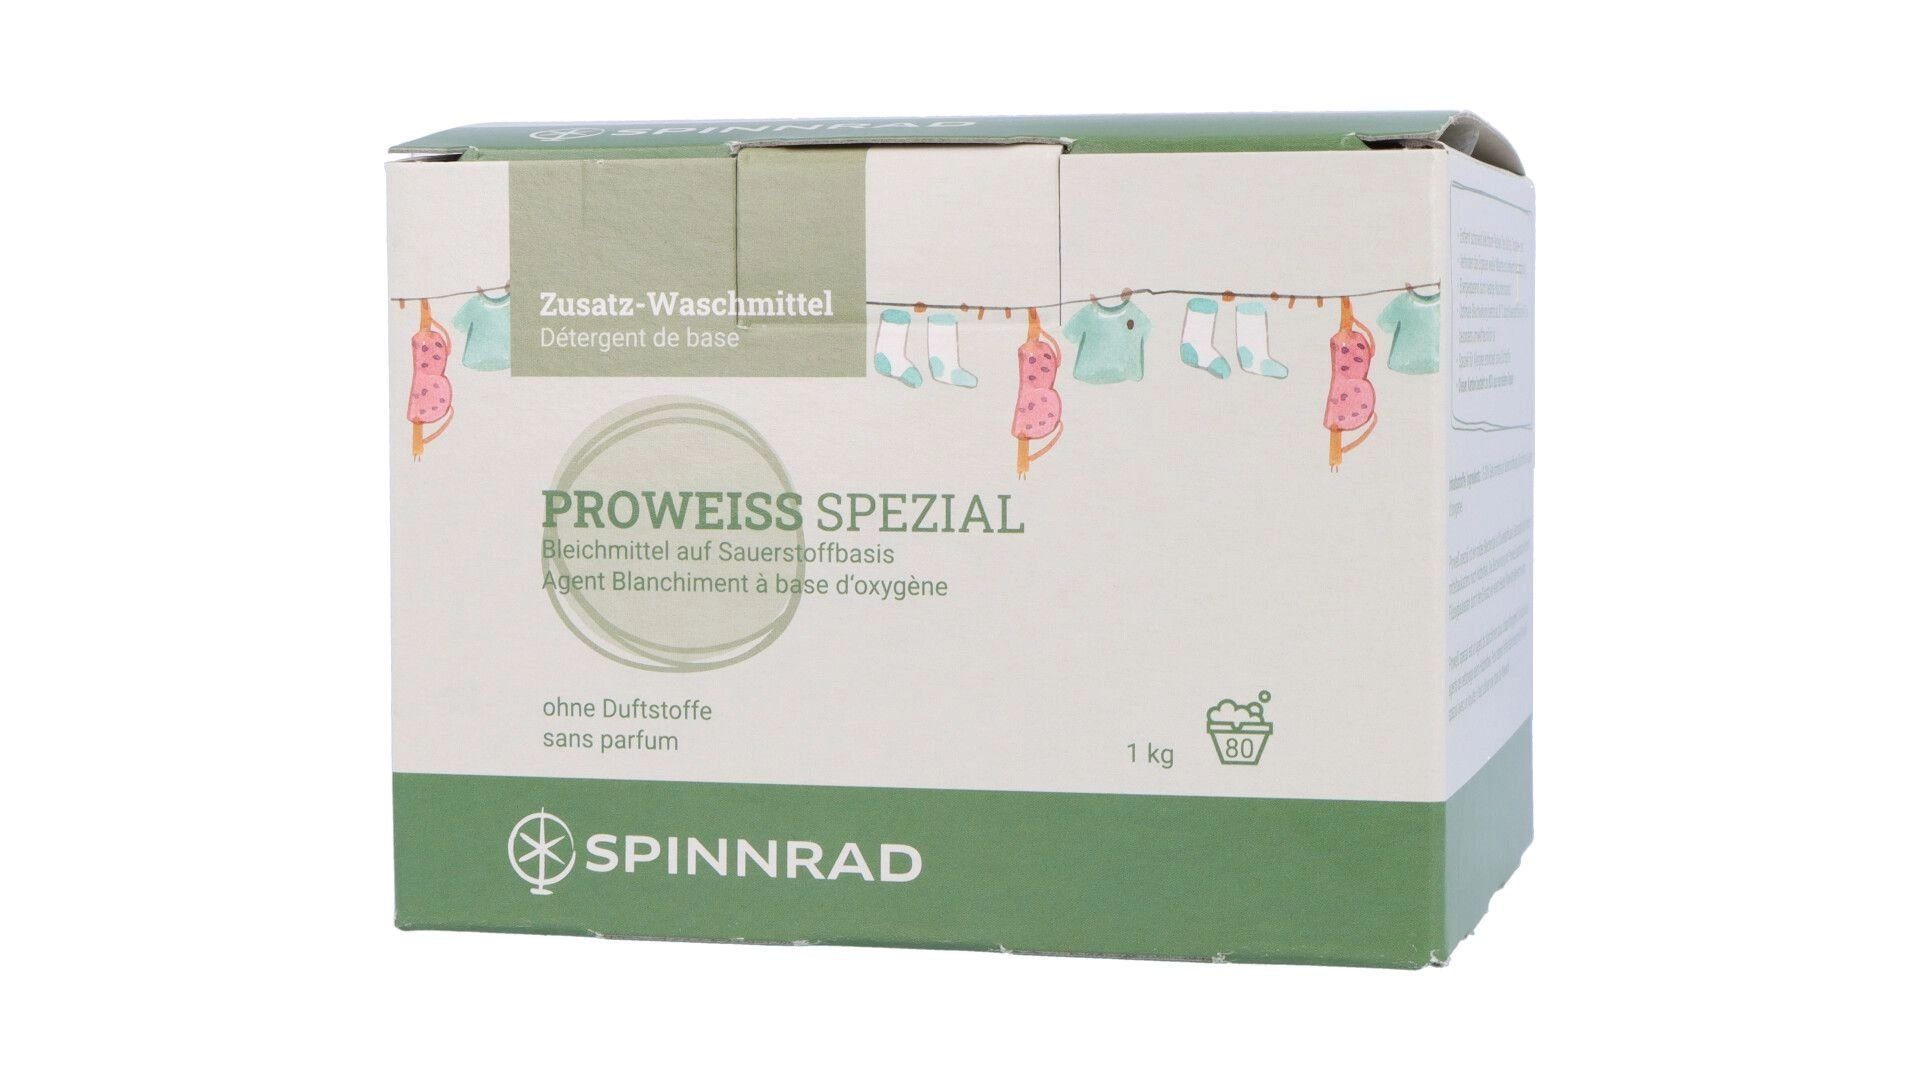 Spezialwaschmittel Proweiß, GmbH Sauerstoffbasis 1 kg auf Spinnrad Bleichmittel